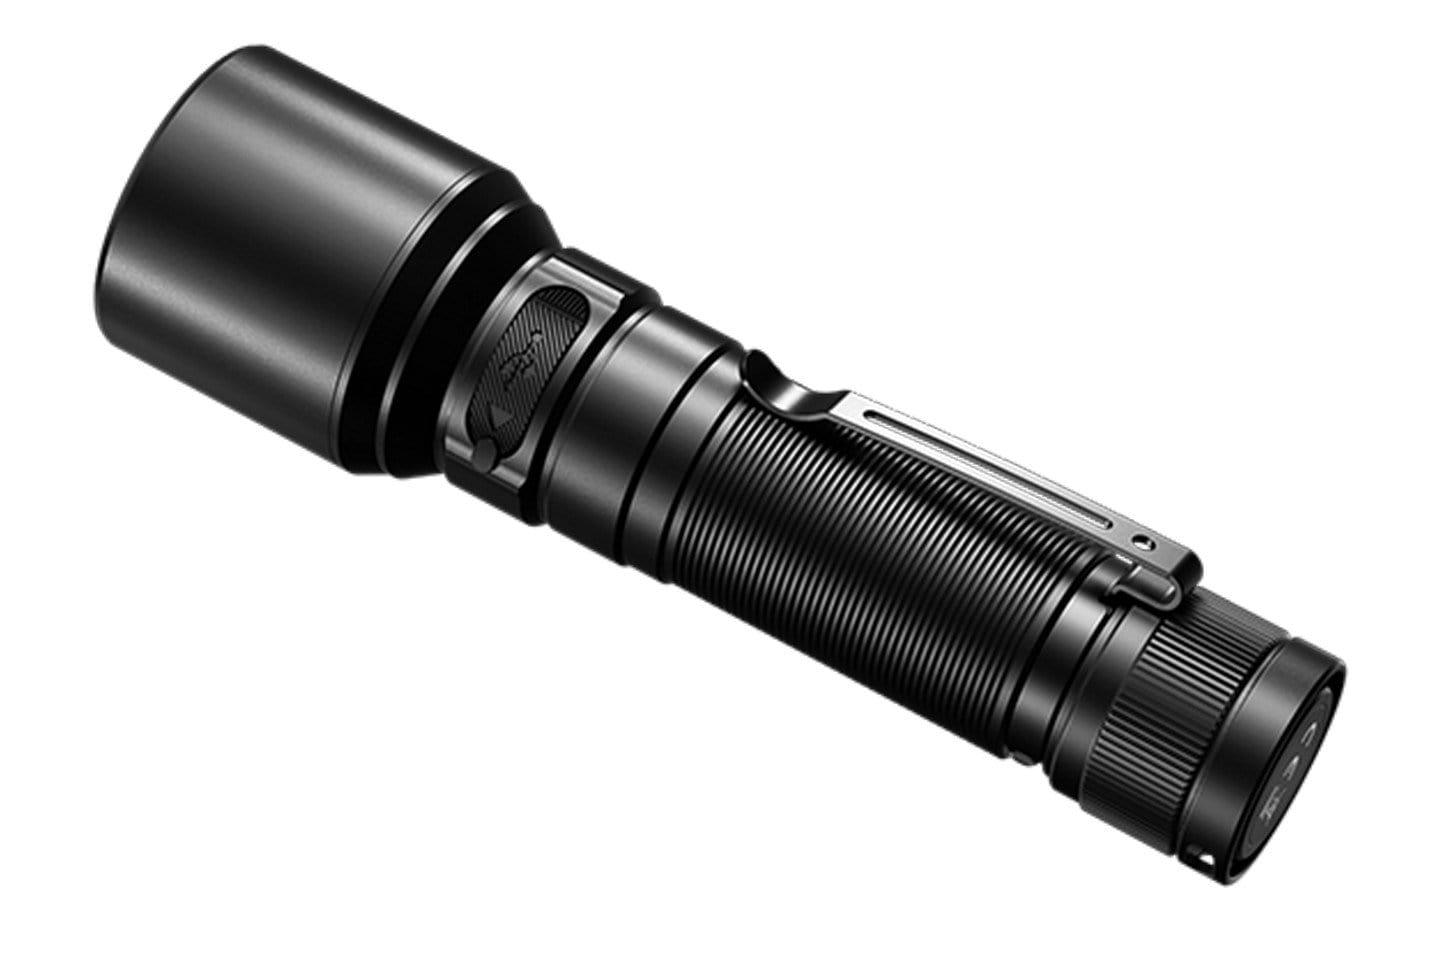 Lampe torche Fenix HT30R à laser blanc ultra-longue portée